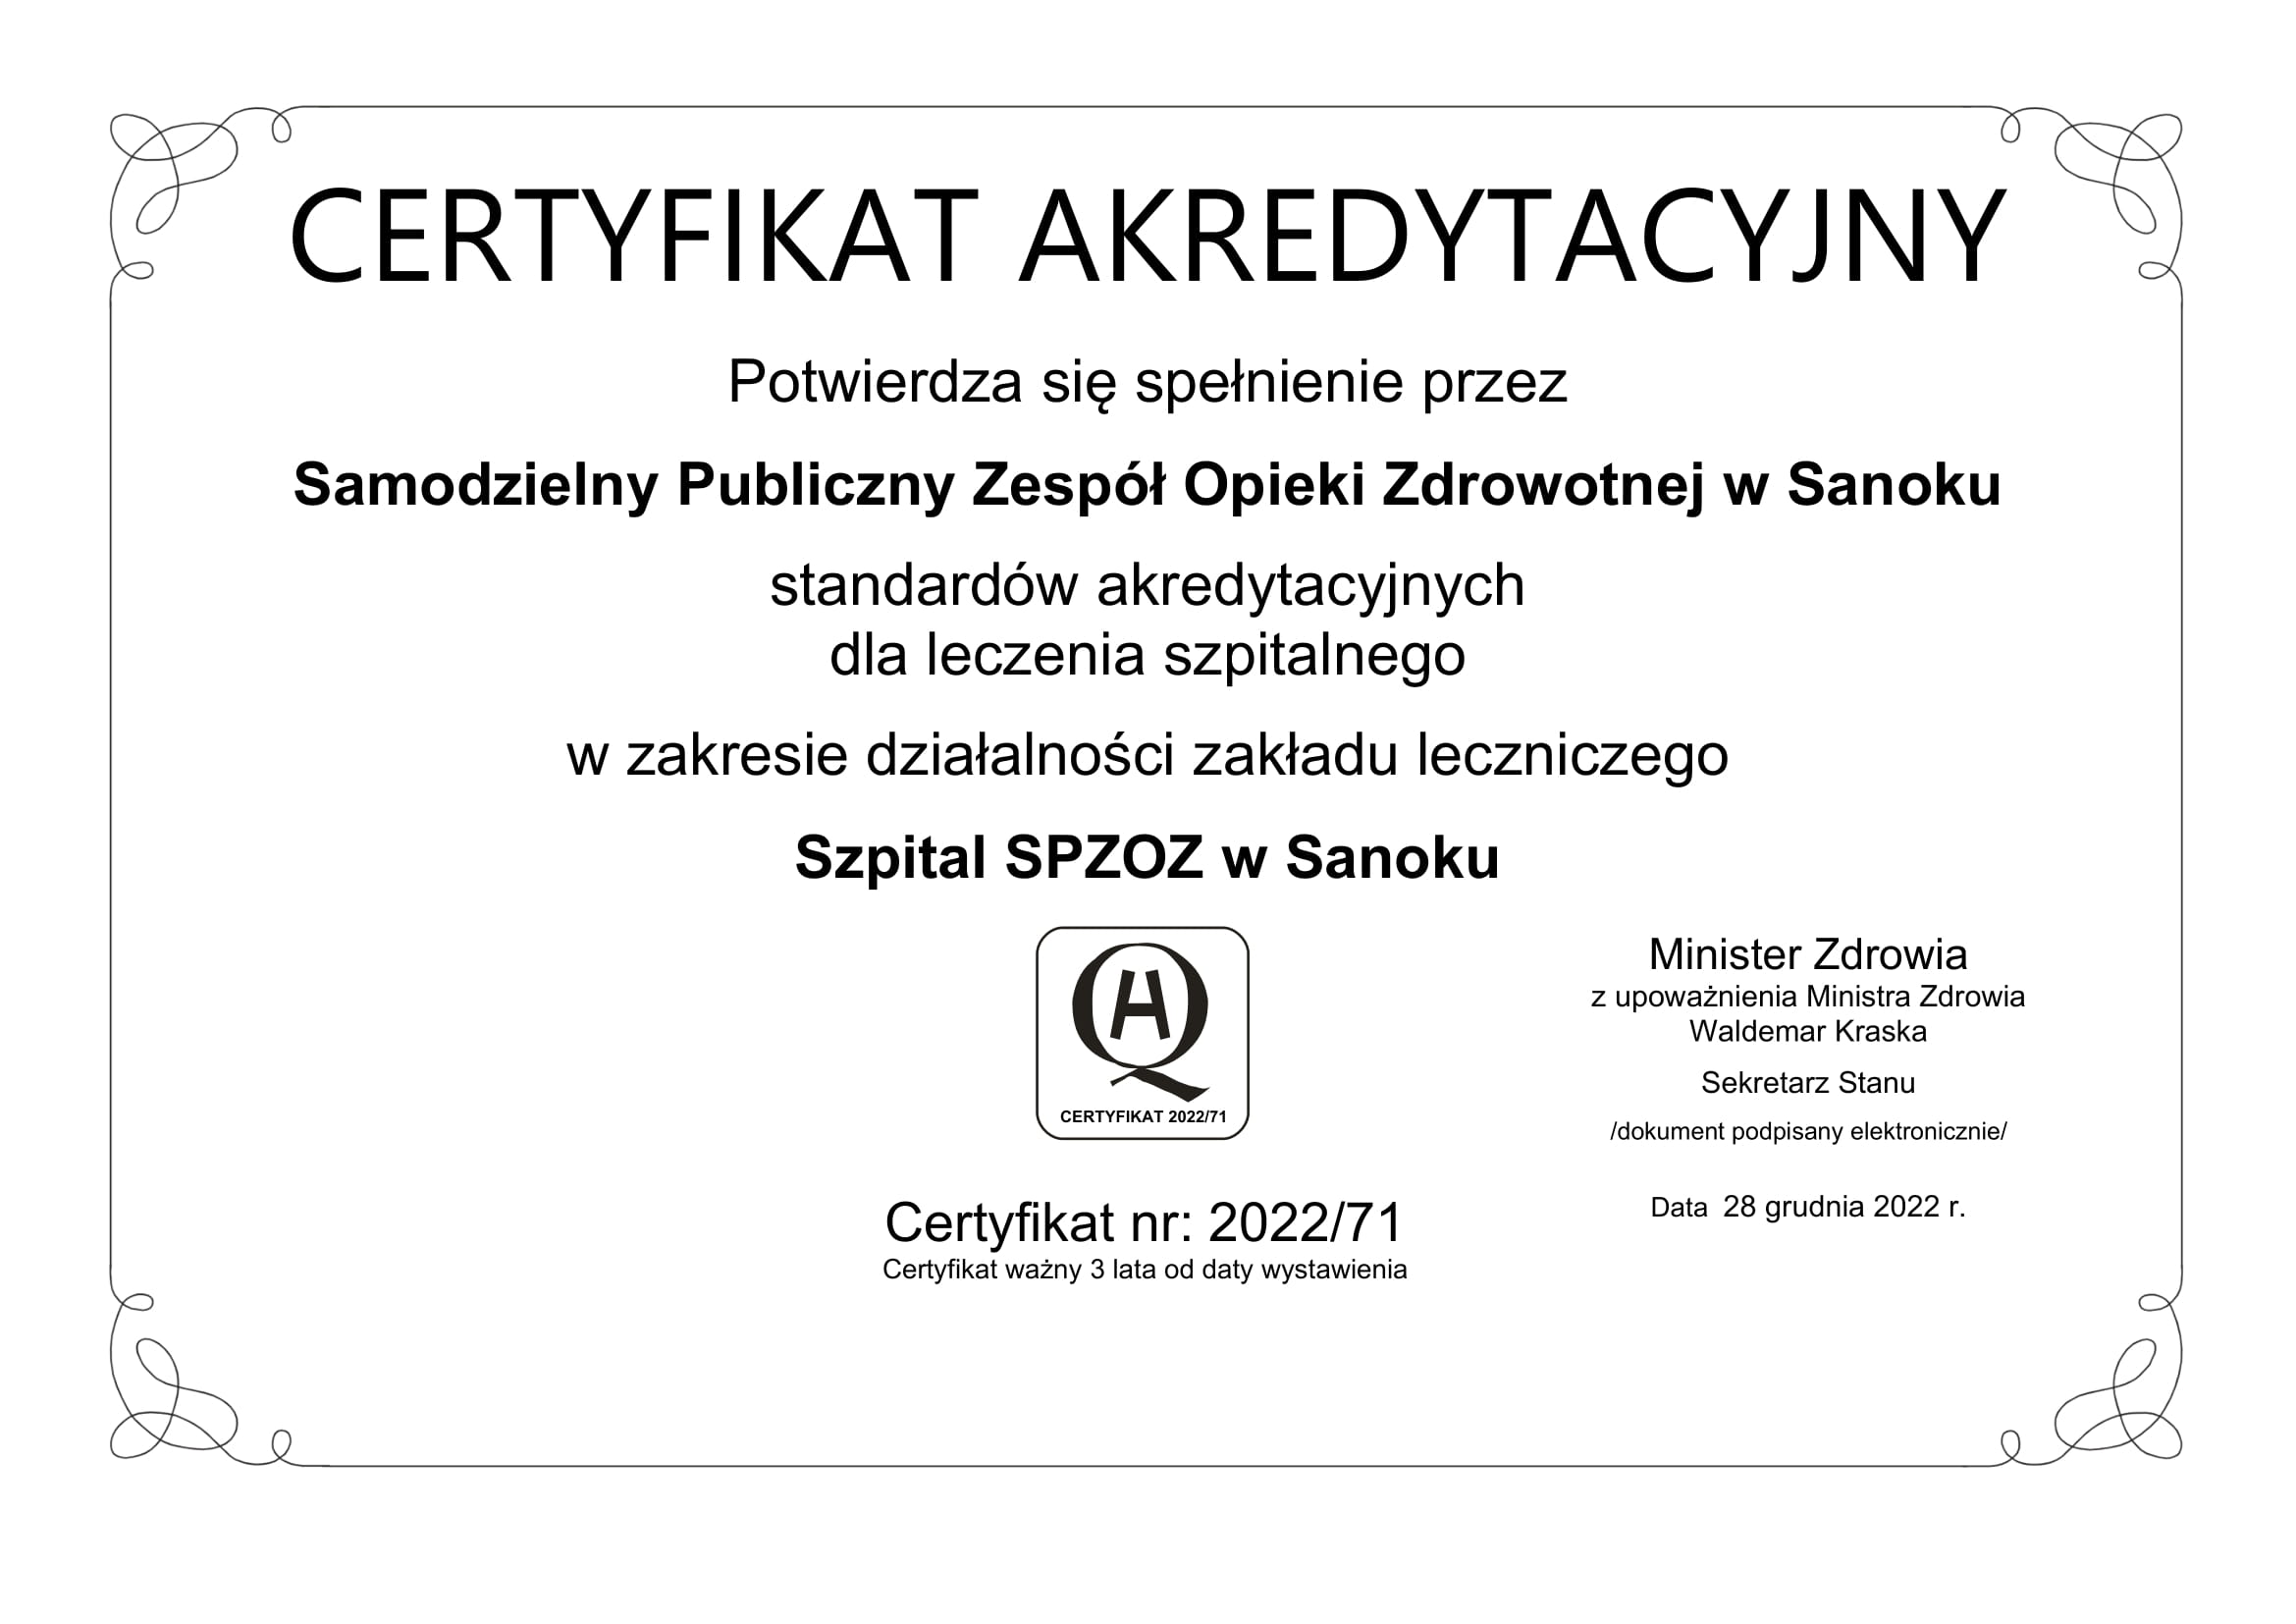 Certyfikat potwierdzający otrzymanie certyfikatu akredytacyjnego 2022